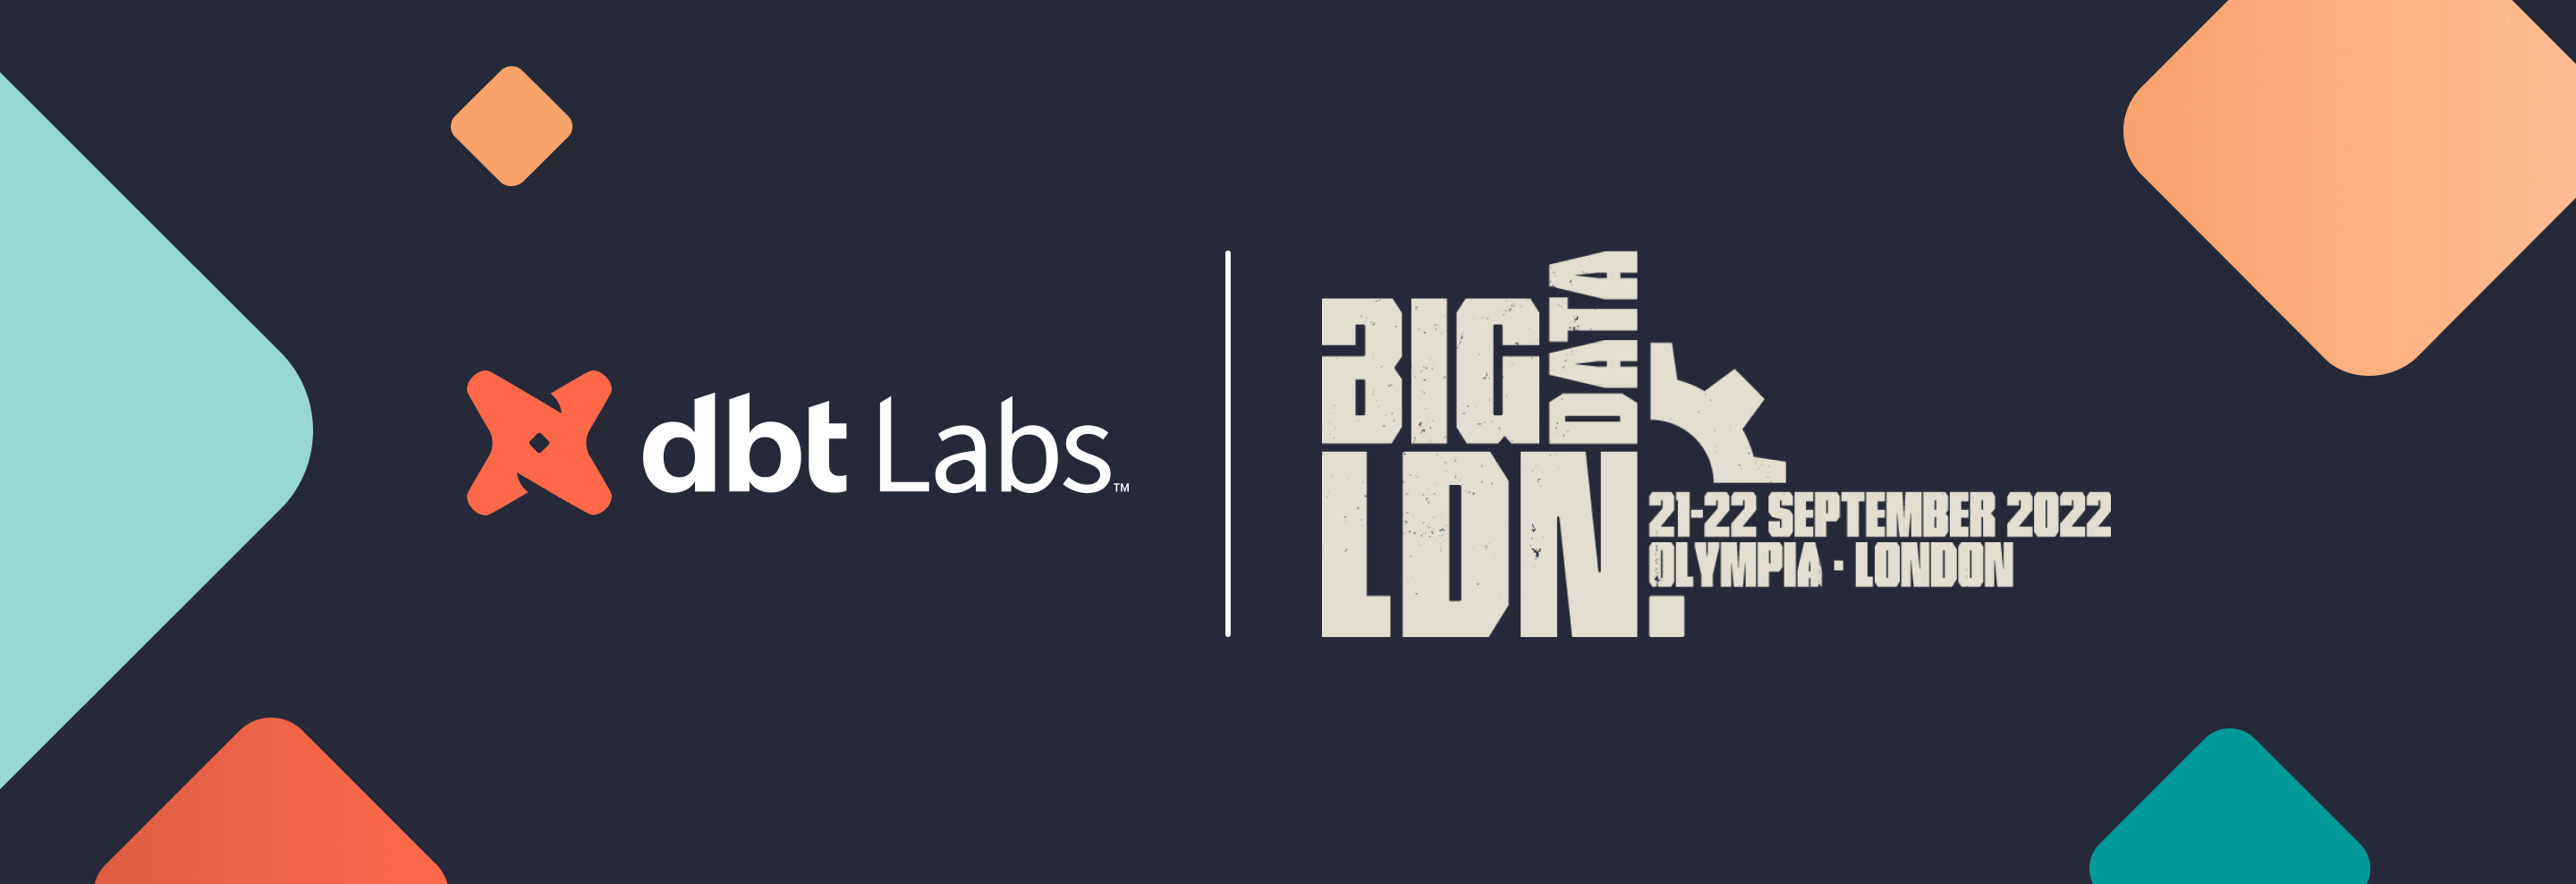 dbt Labs @ Big Data LDN